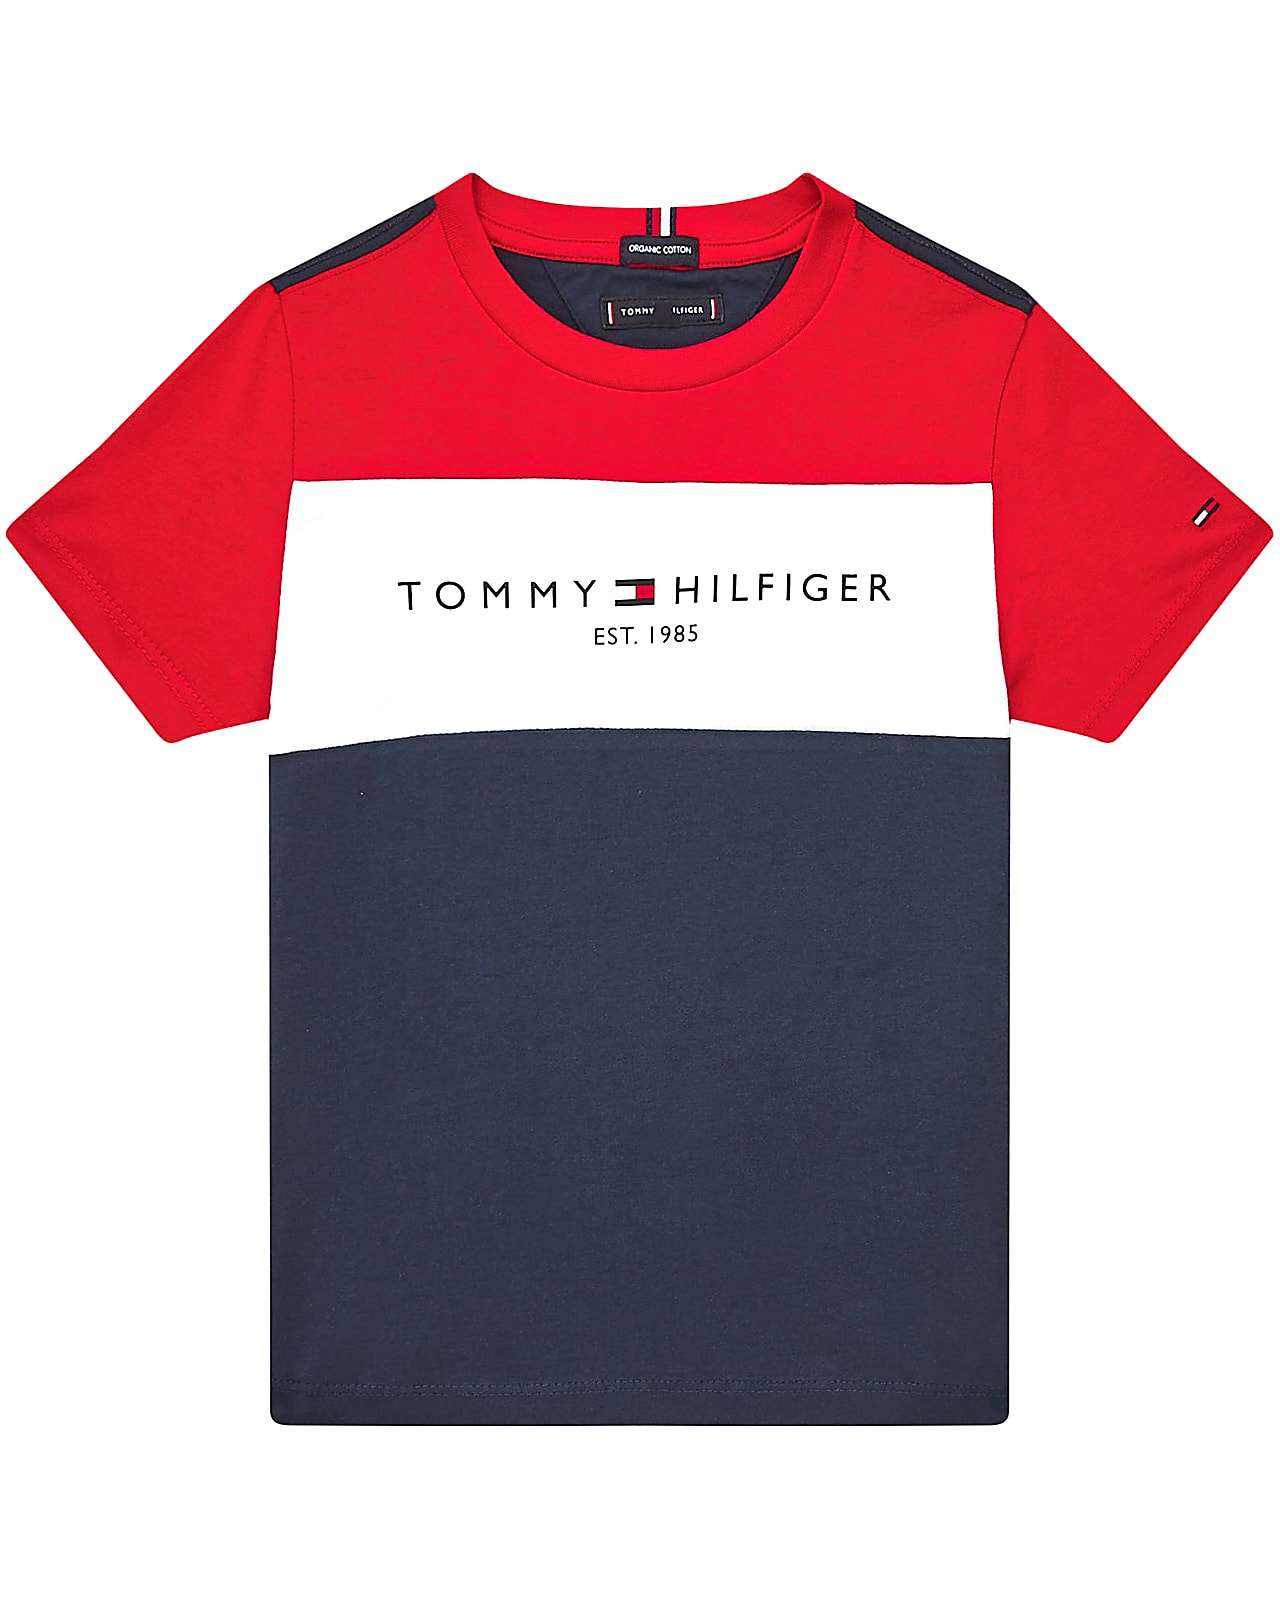 Tommy Hilfiger Essential, twilightnavy. Alle slags overdele til børn, teens og voksne her